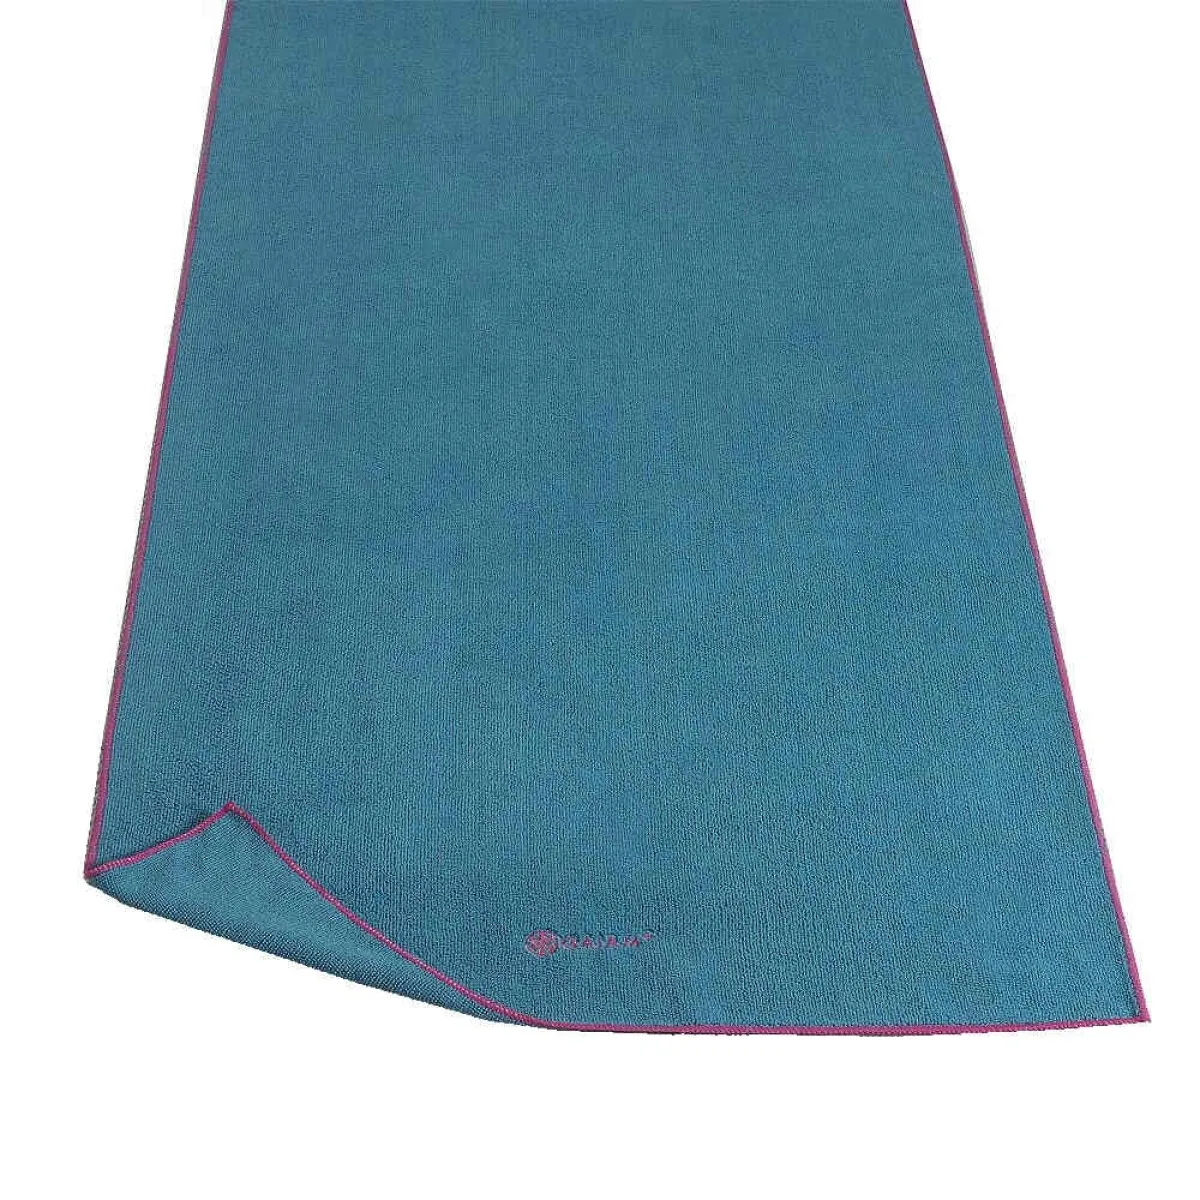 Yoga towel blue/fuchsia 170x 60 cm